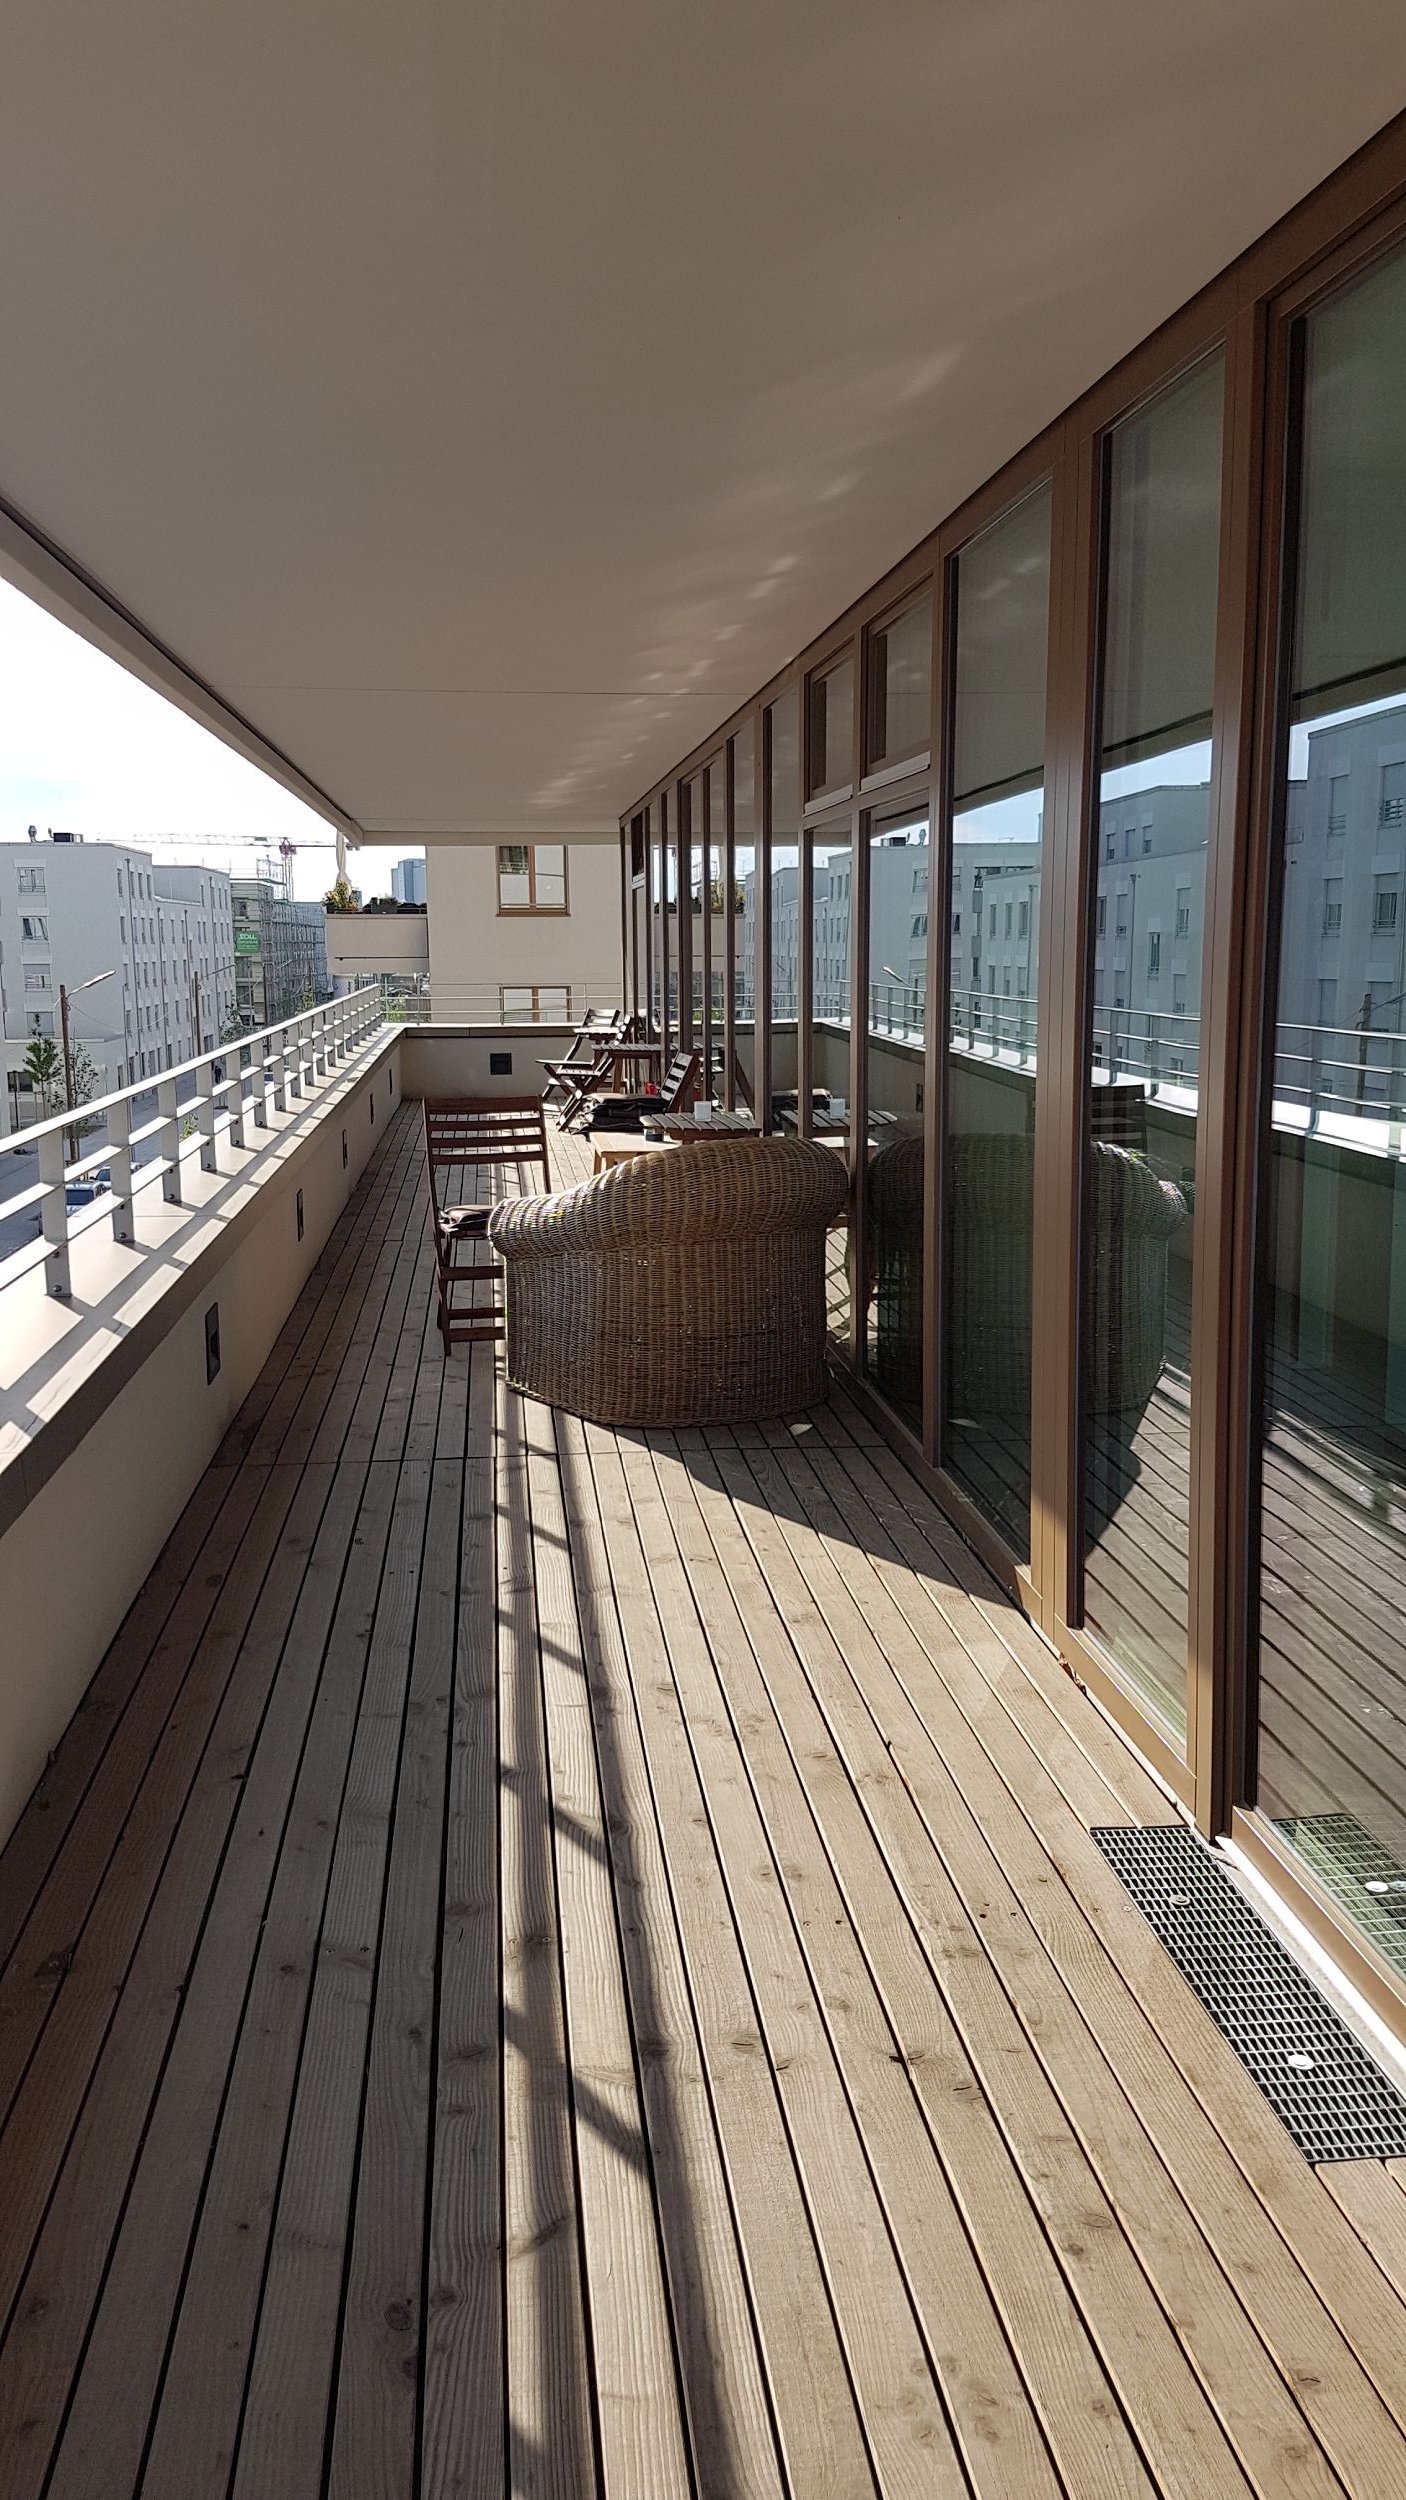 Bild: Balkone beim Wogeno Wohnprojekt im Domagkpark München, Foto: ver.de landschaftsarchitektur